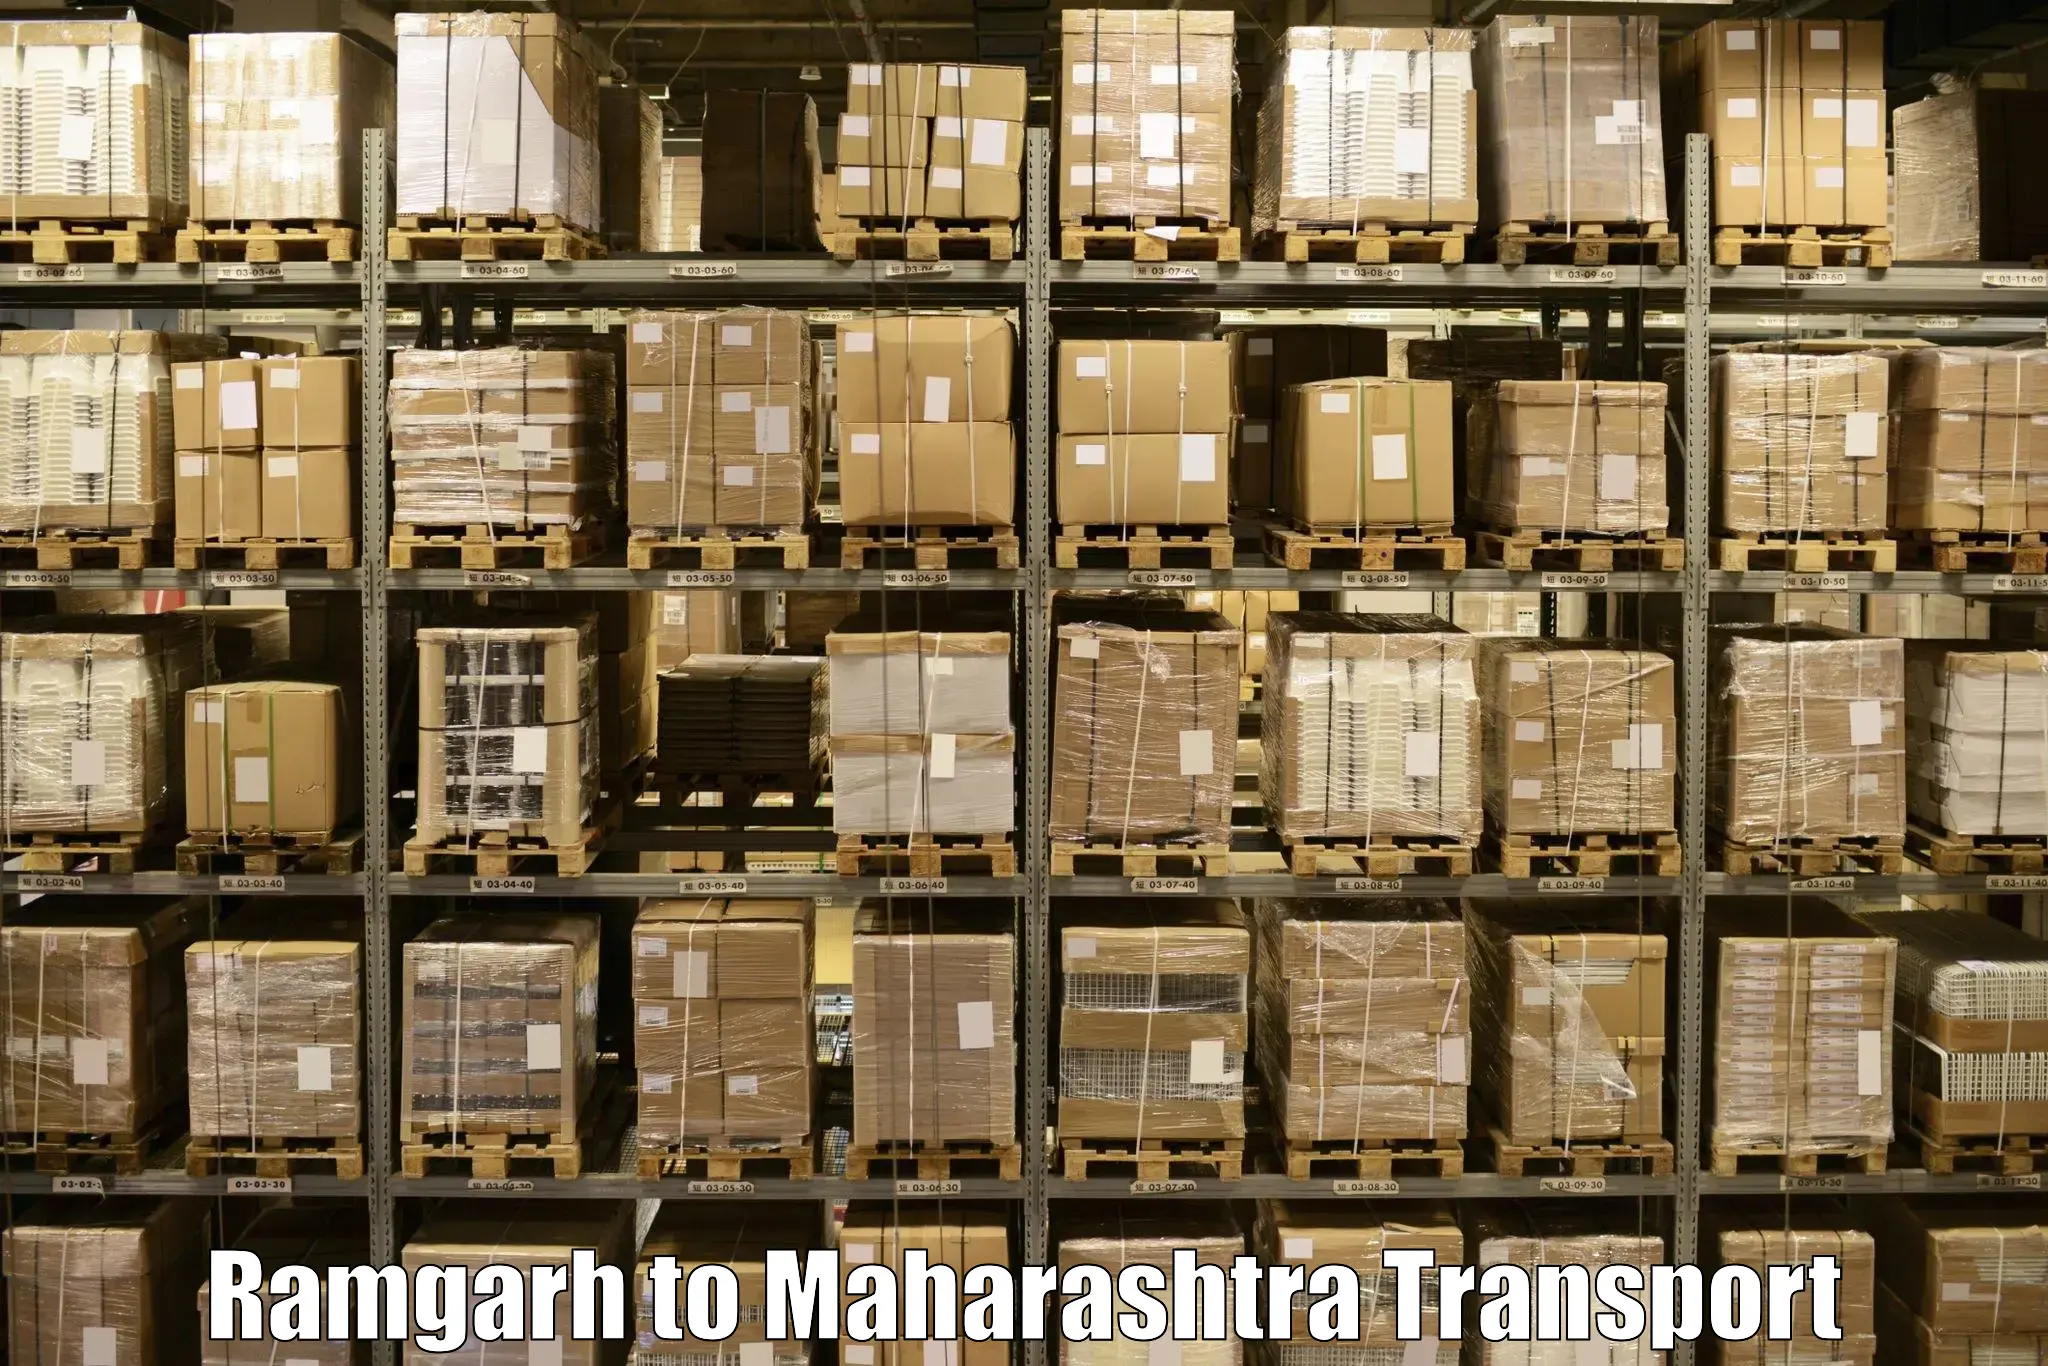 Intercity transport Ramgarh to Loni Ahmednagar